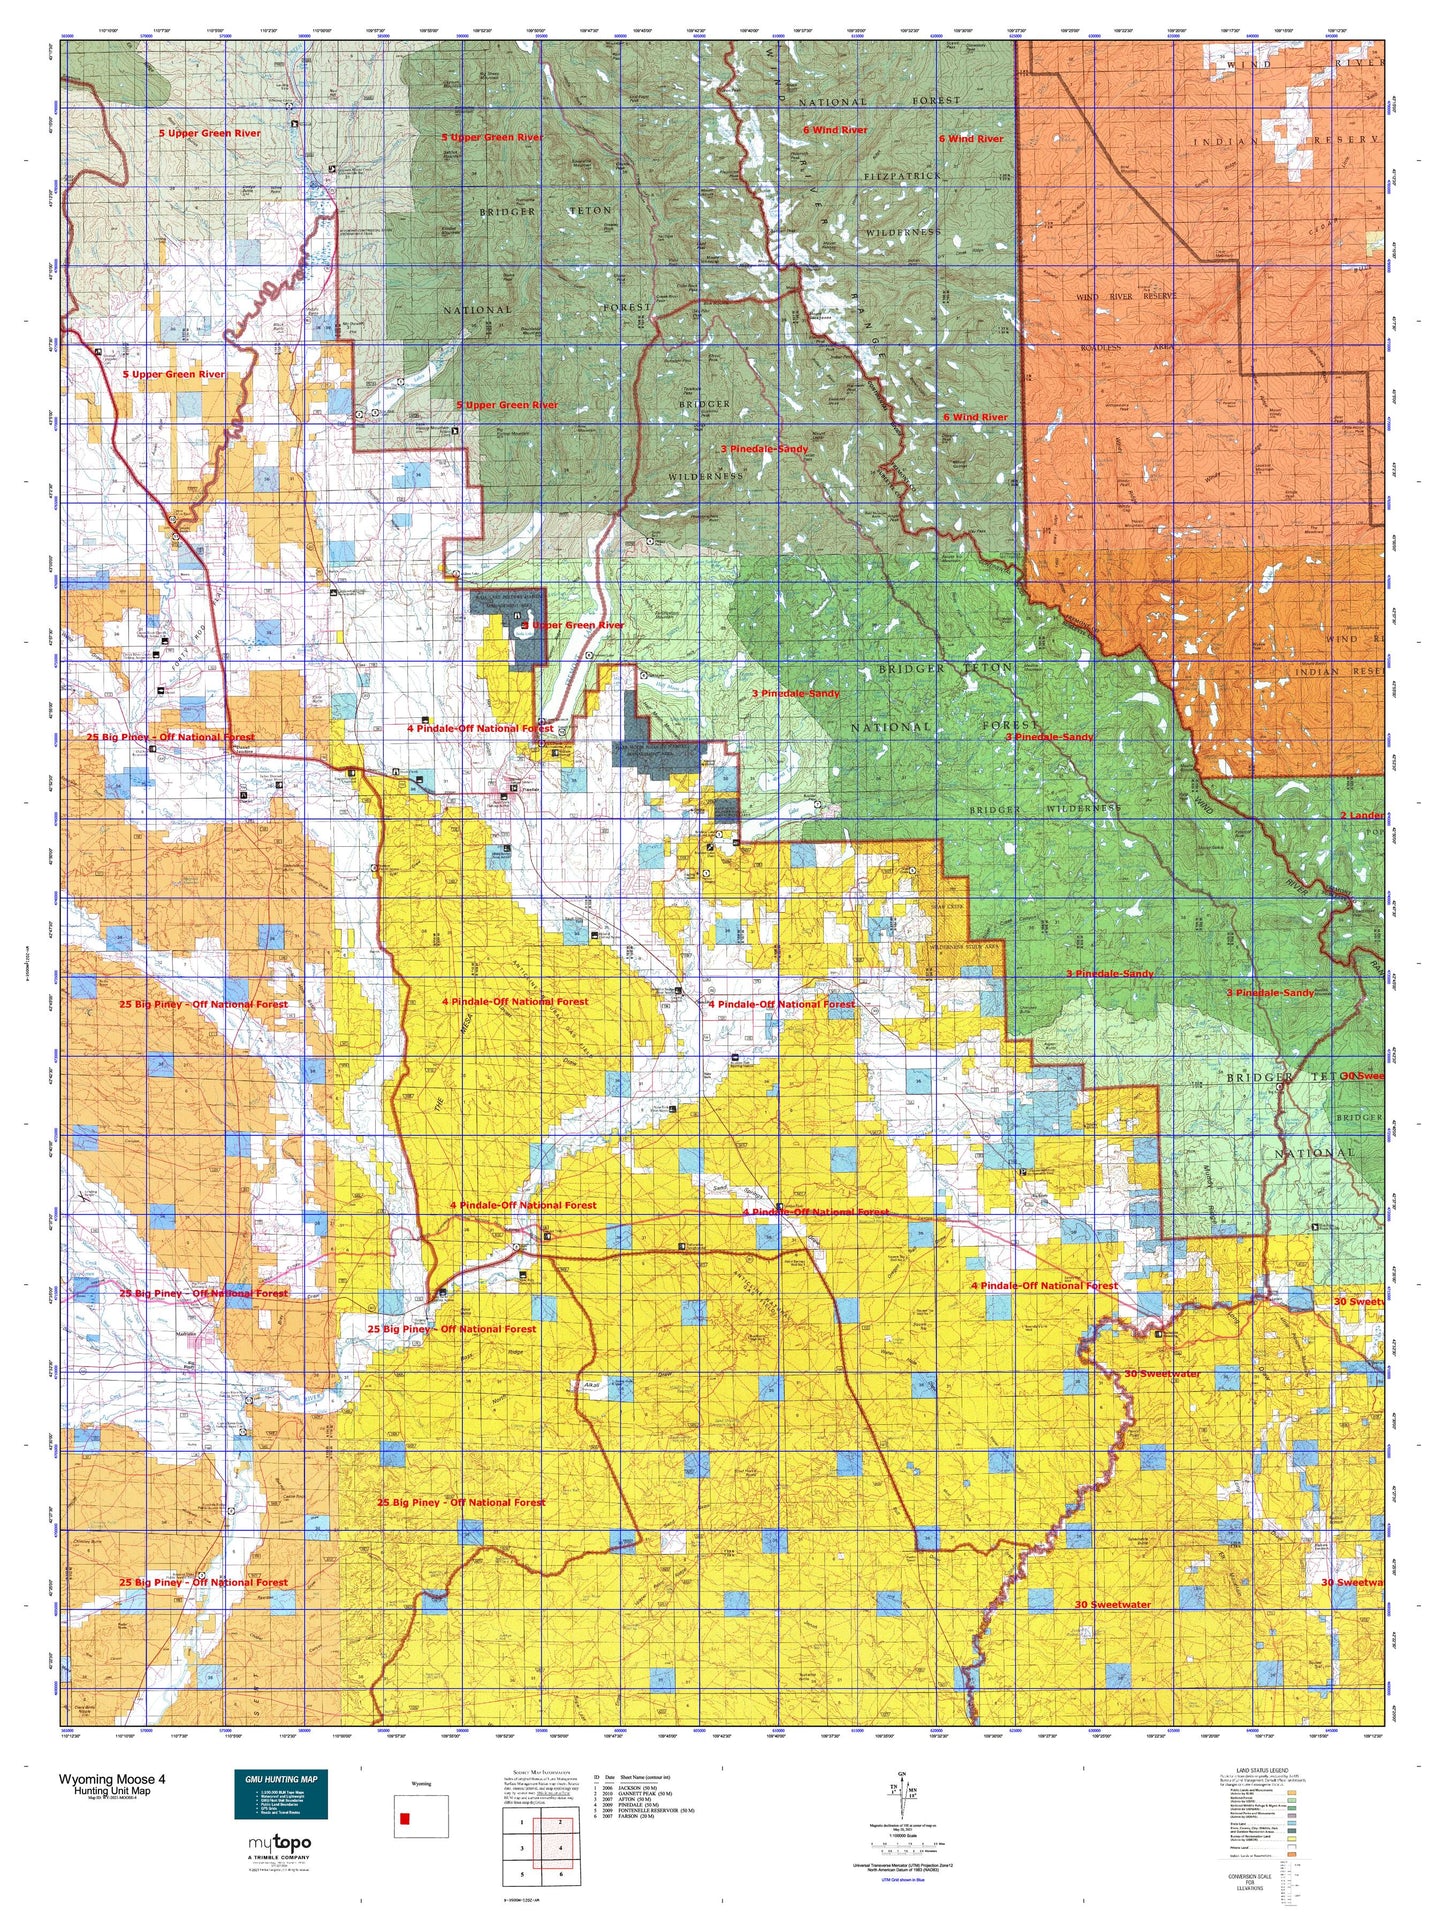 Wyoming Moose 4 Map Image